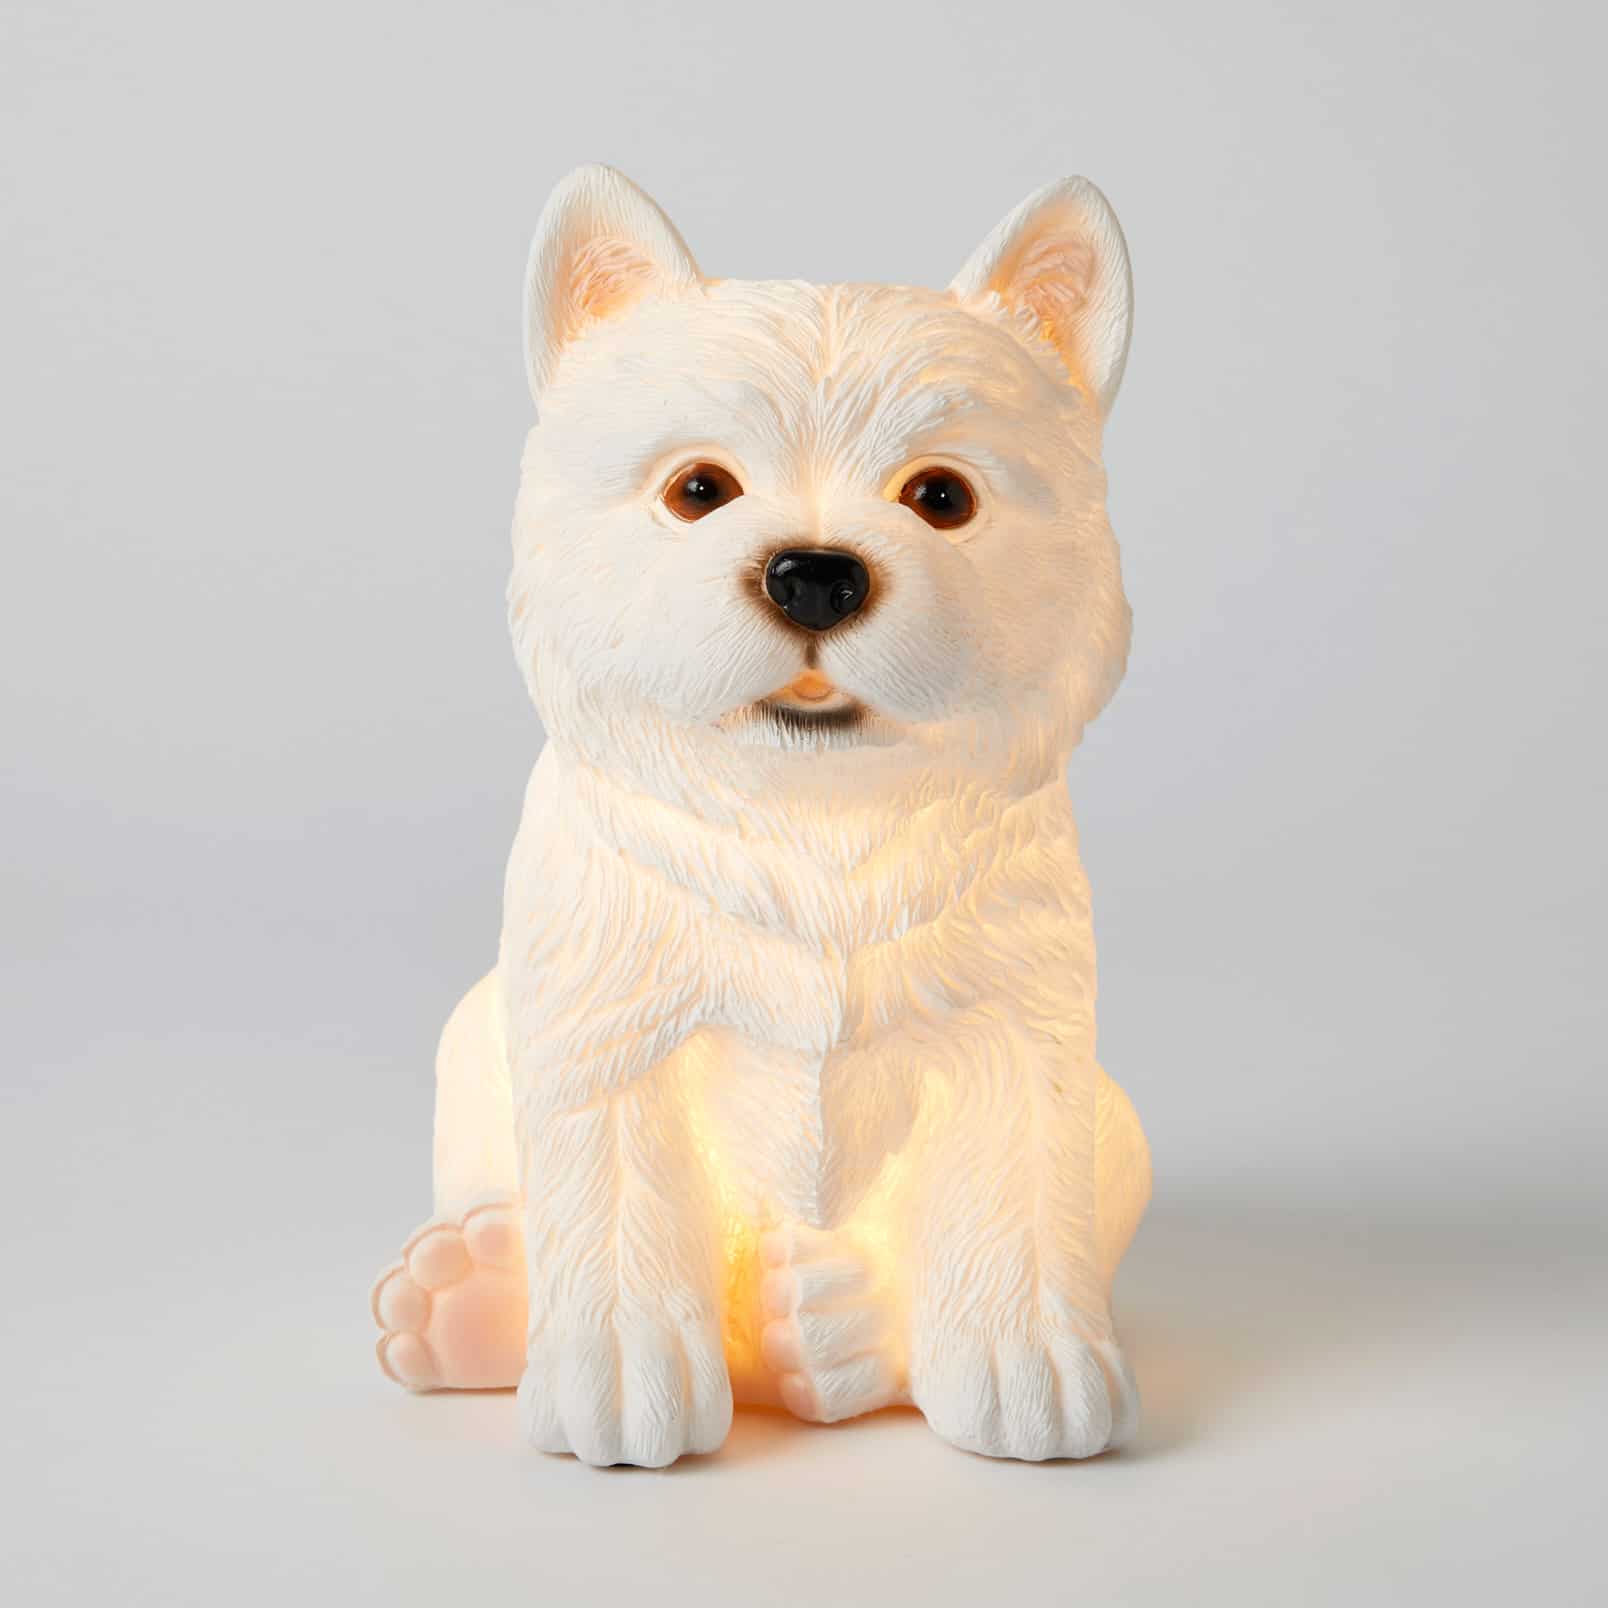 Dog Sculptured Children's Night Light